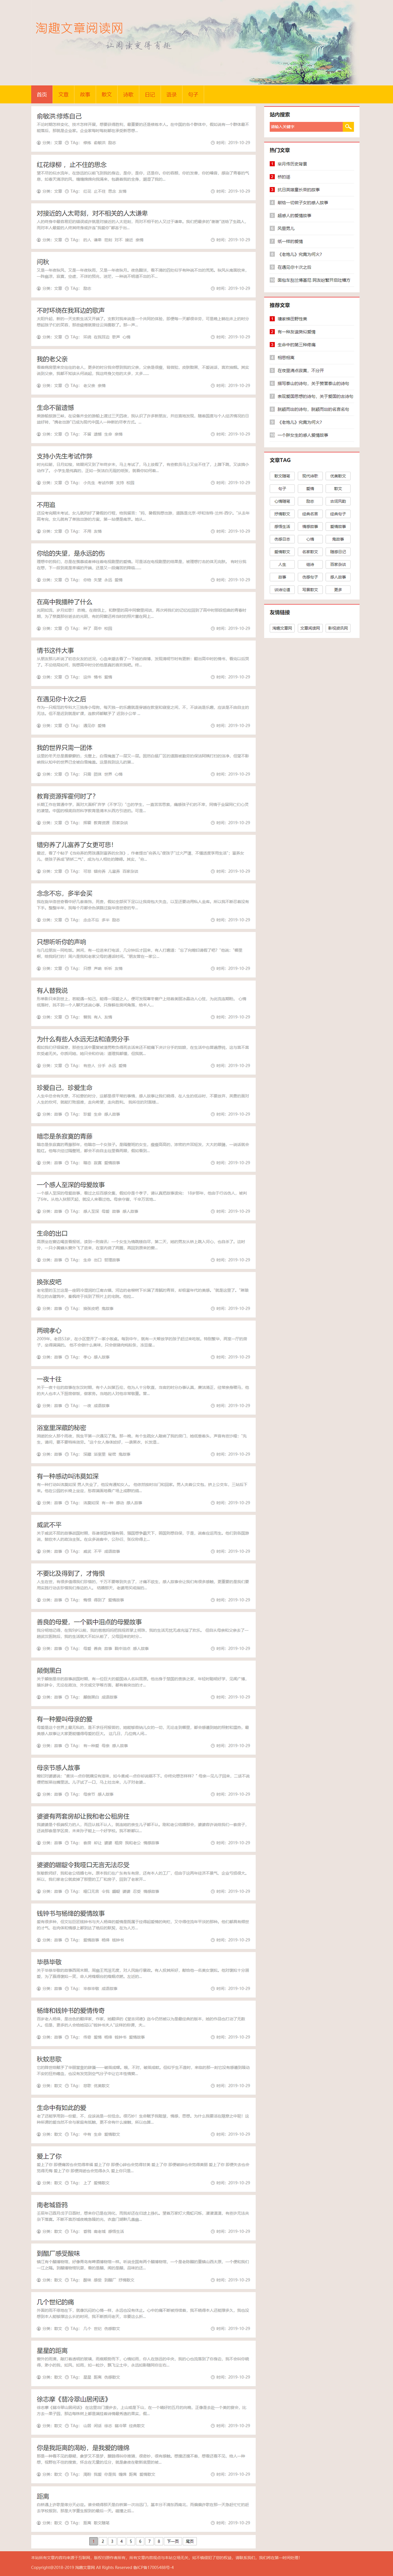 帝国cms橙色系新闻文章日记语录博客型自适应手机网站模板